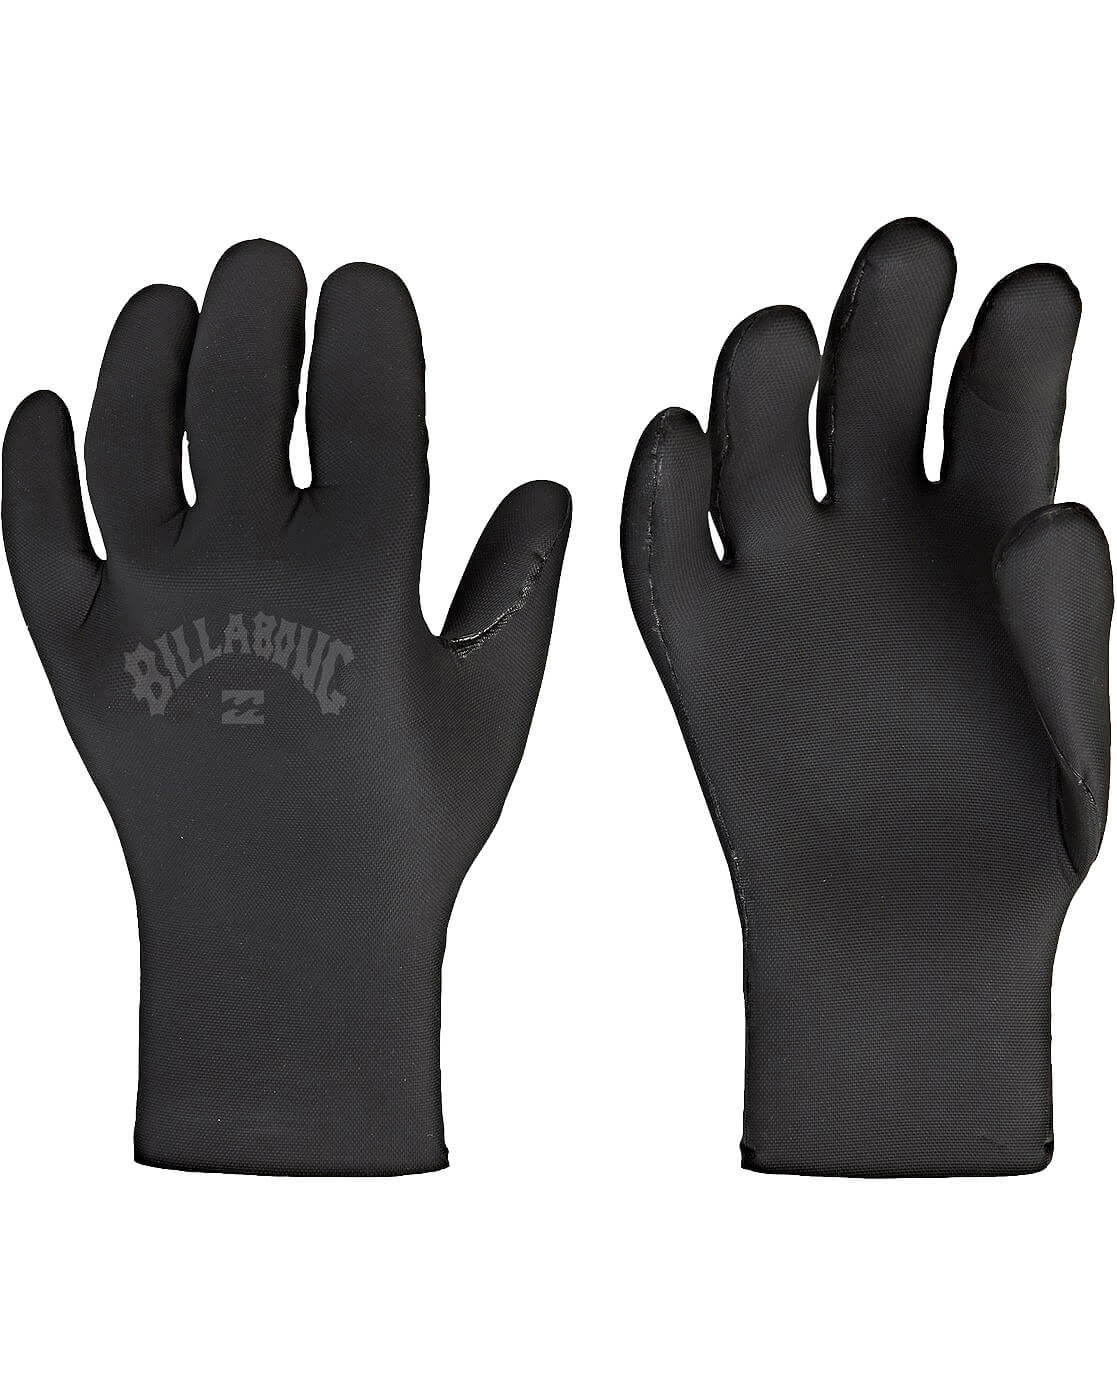 2mm Billabong Absolute Wetsuit Gloves